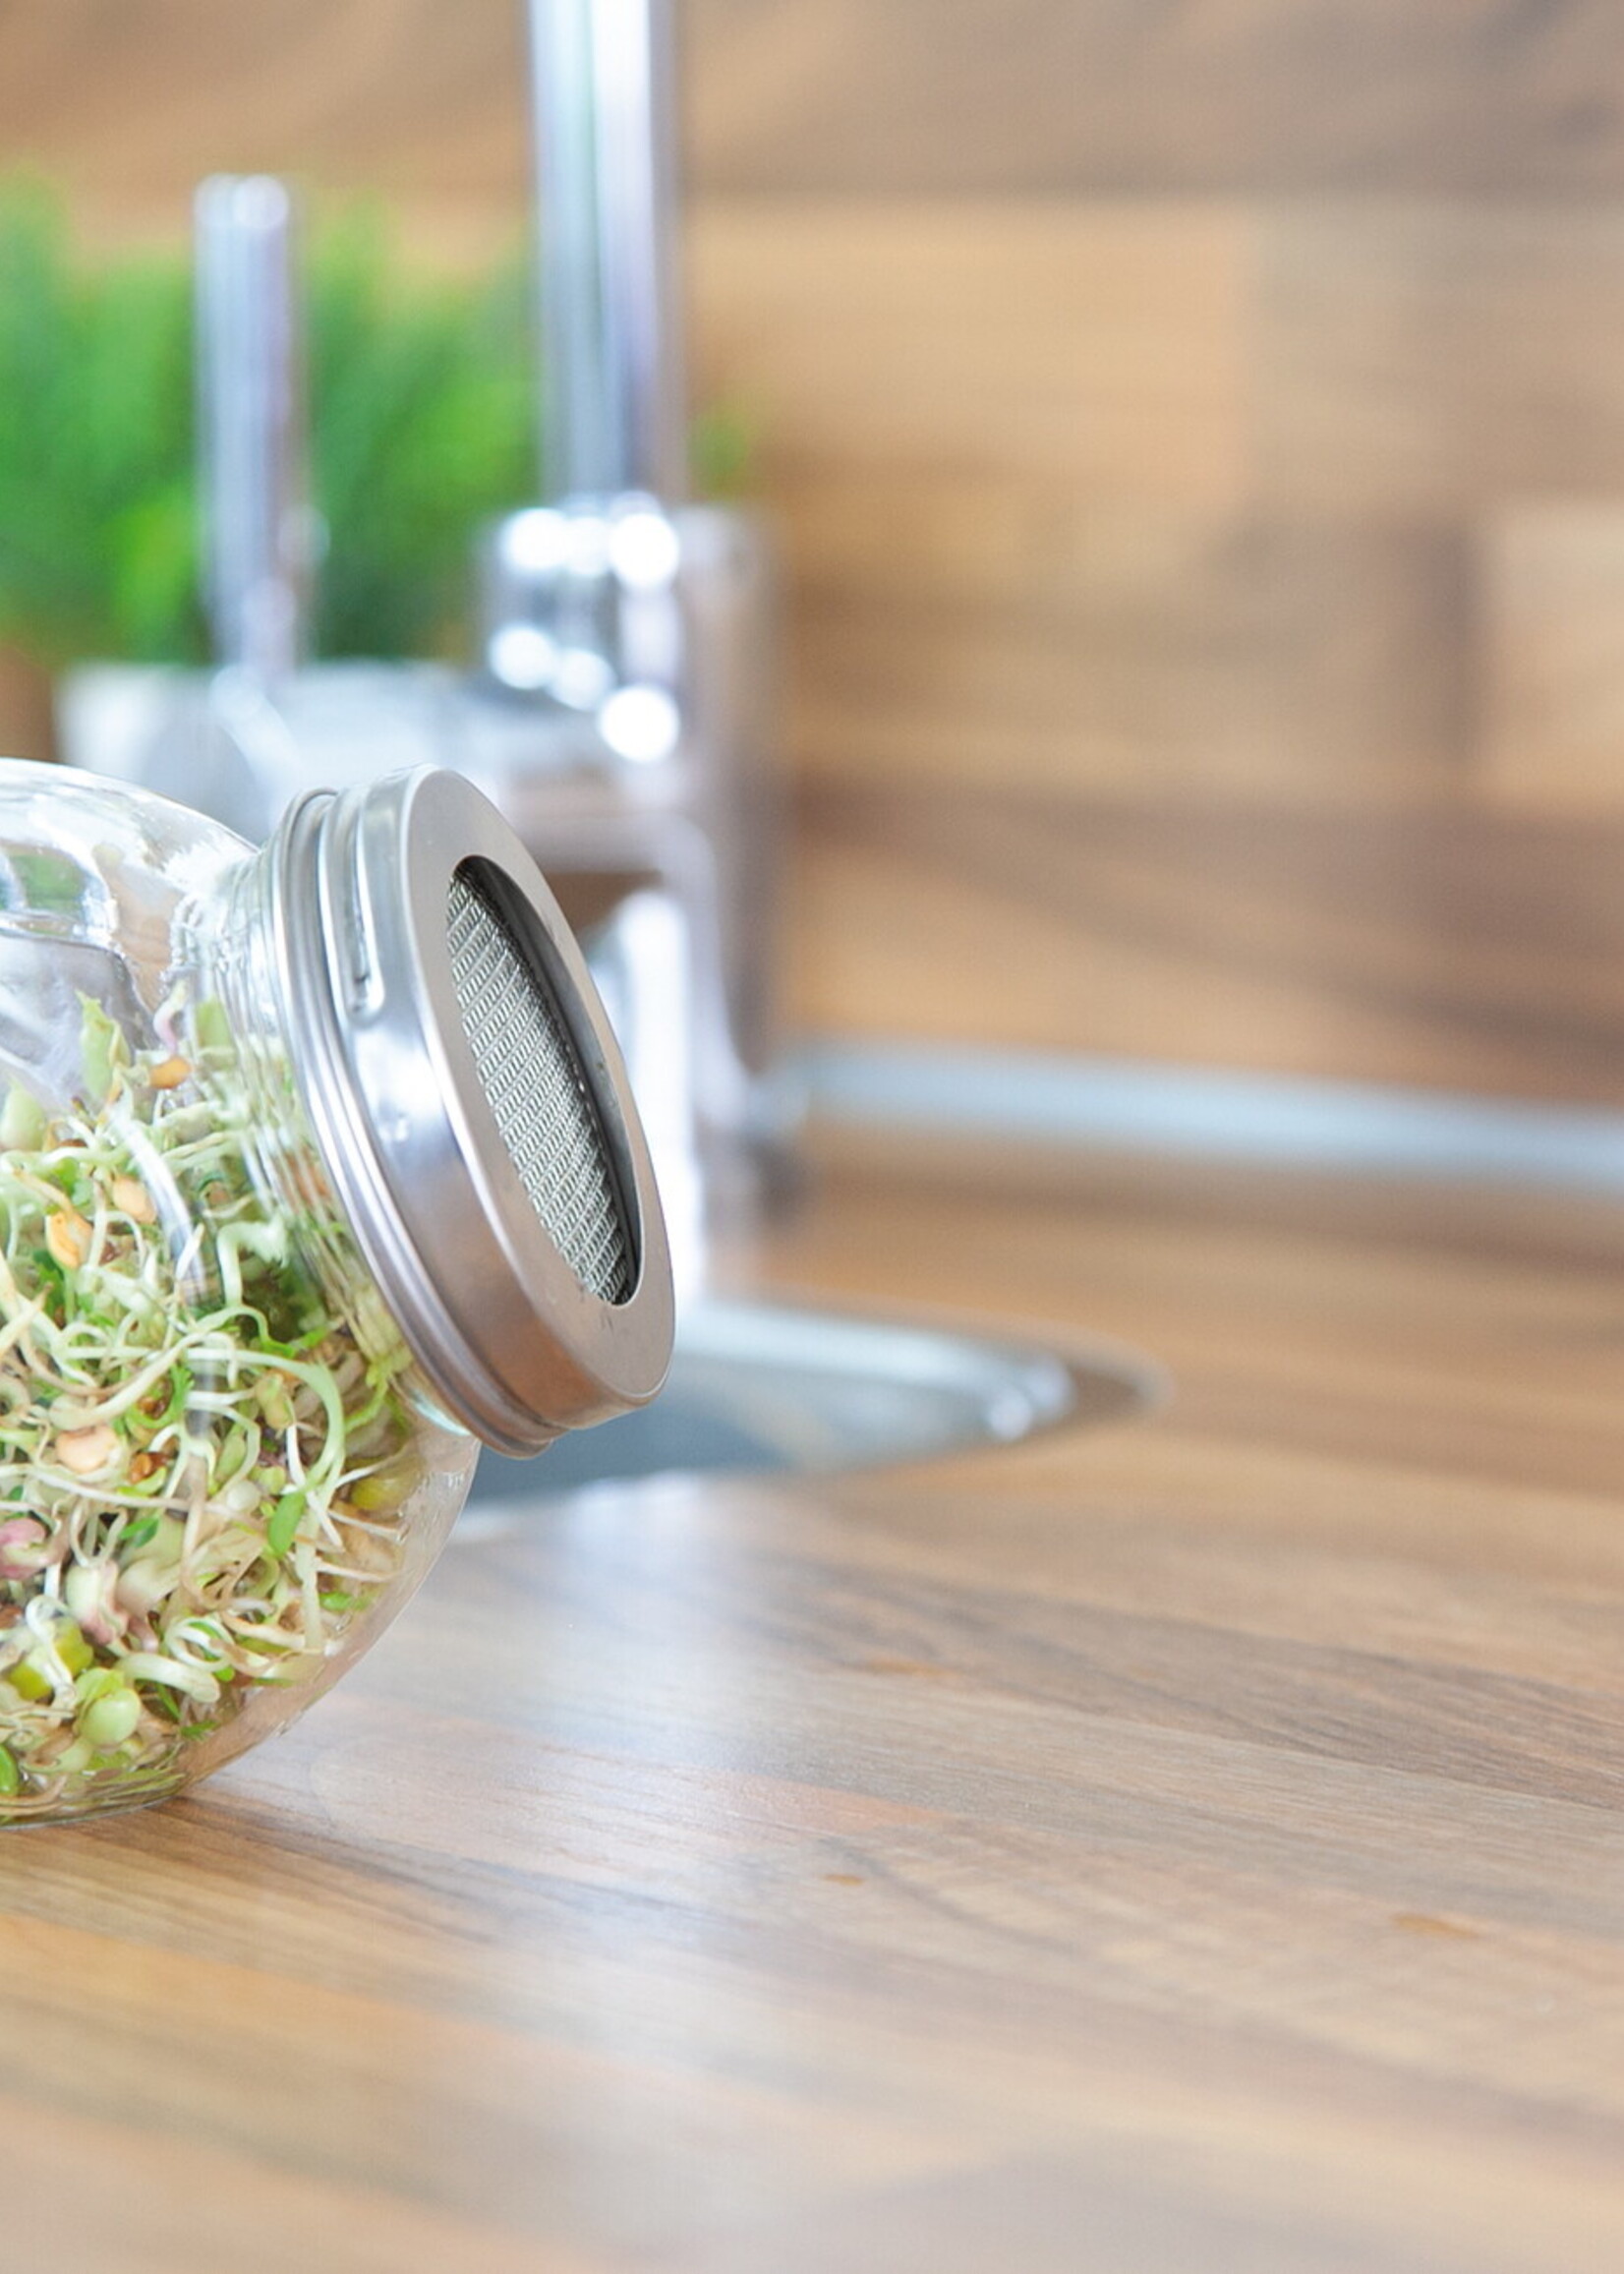 Buzzy Organic Sprouting pot Salademix